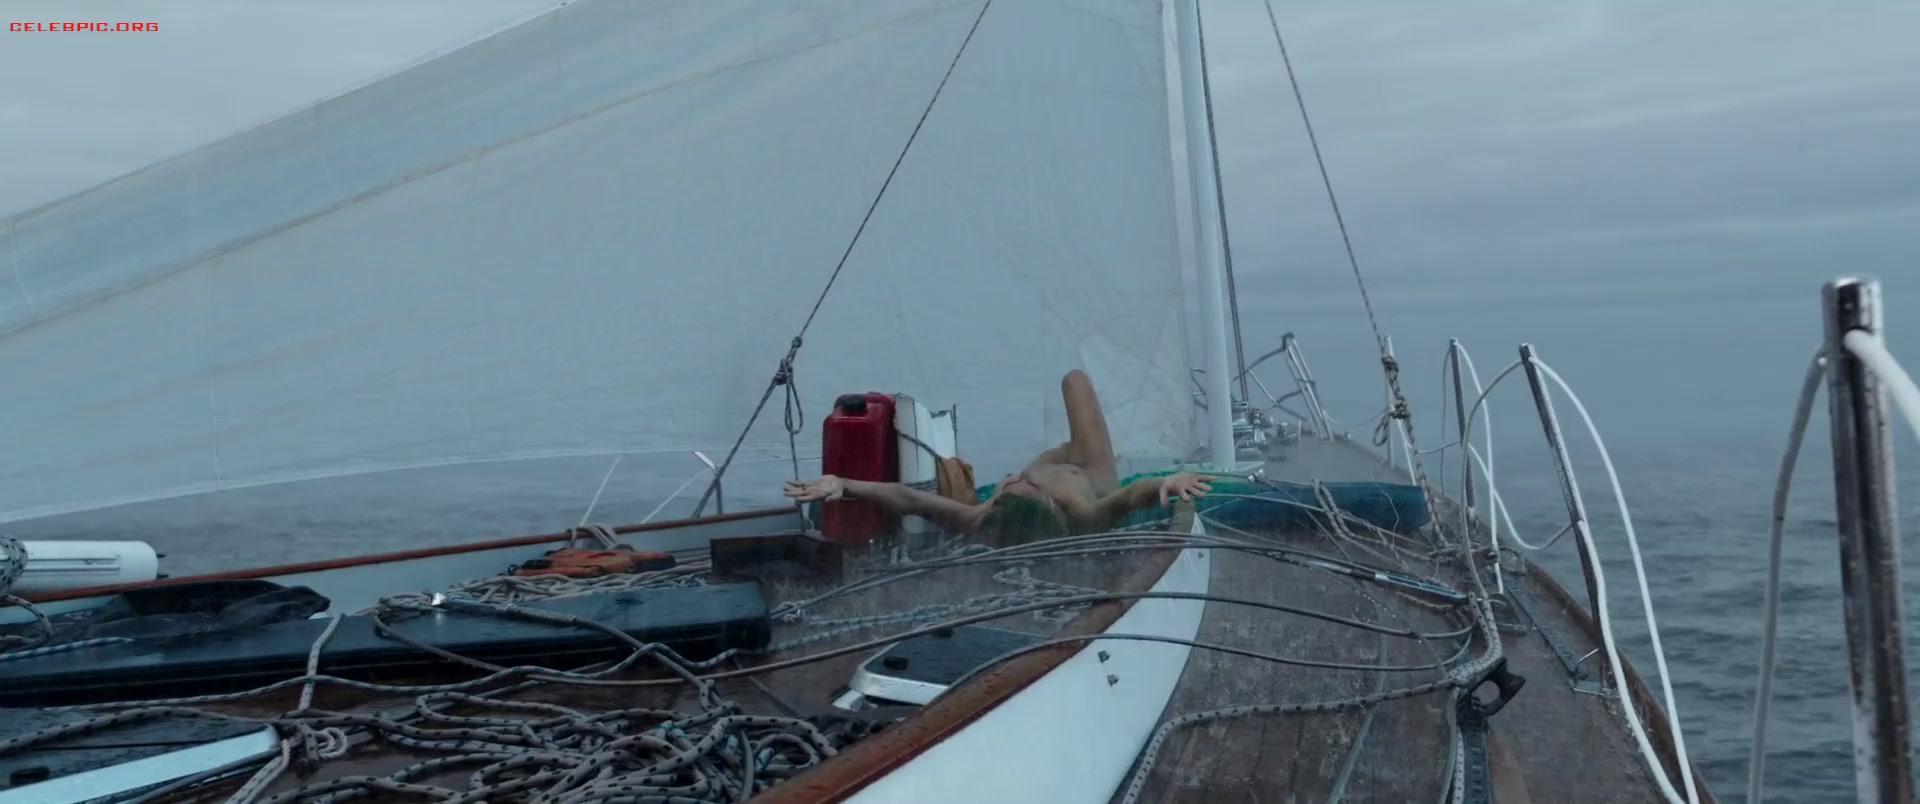 Shailene Woodley - Adrift 1080p (1) 0990.jpg